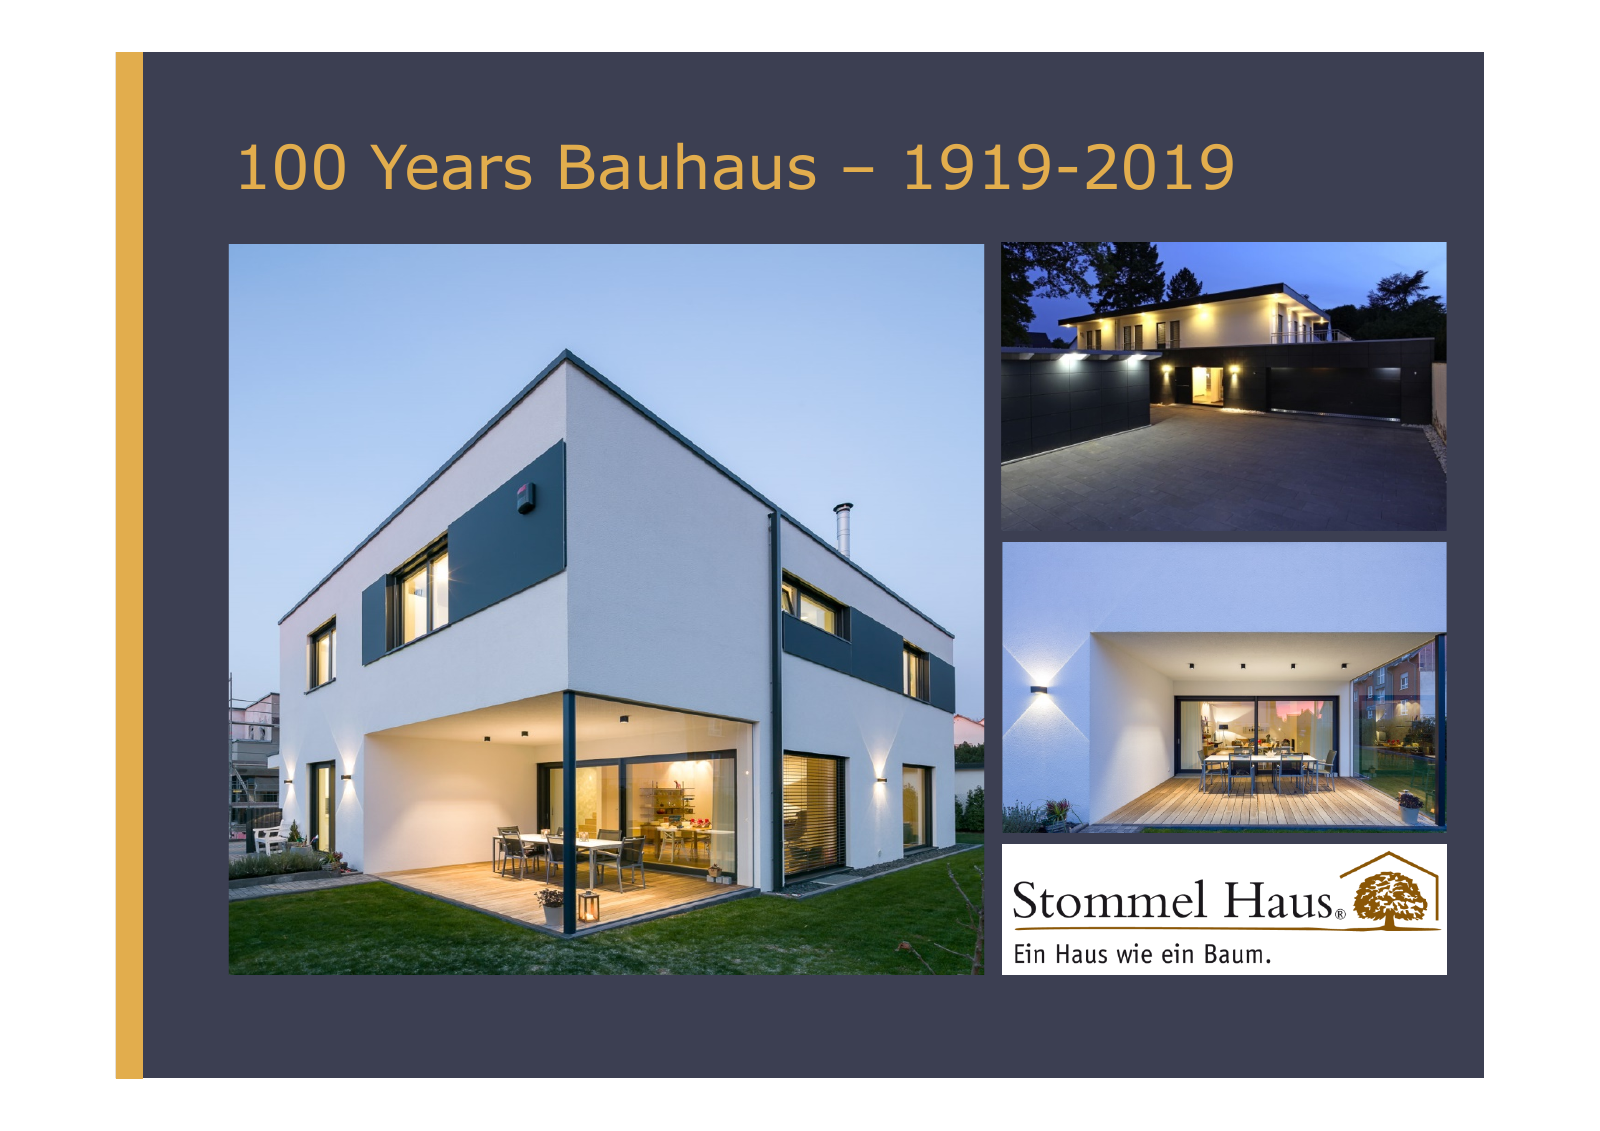 Vorschau Stommel Haus and 100 Years Bauhaus Seite 1